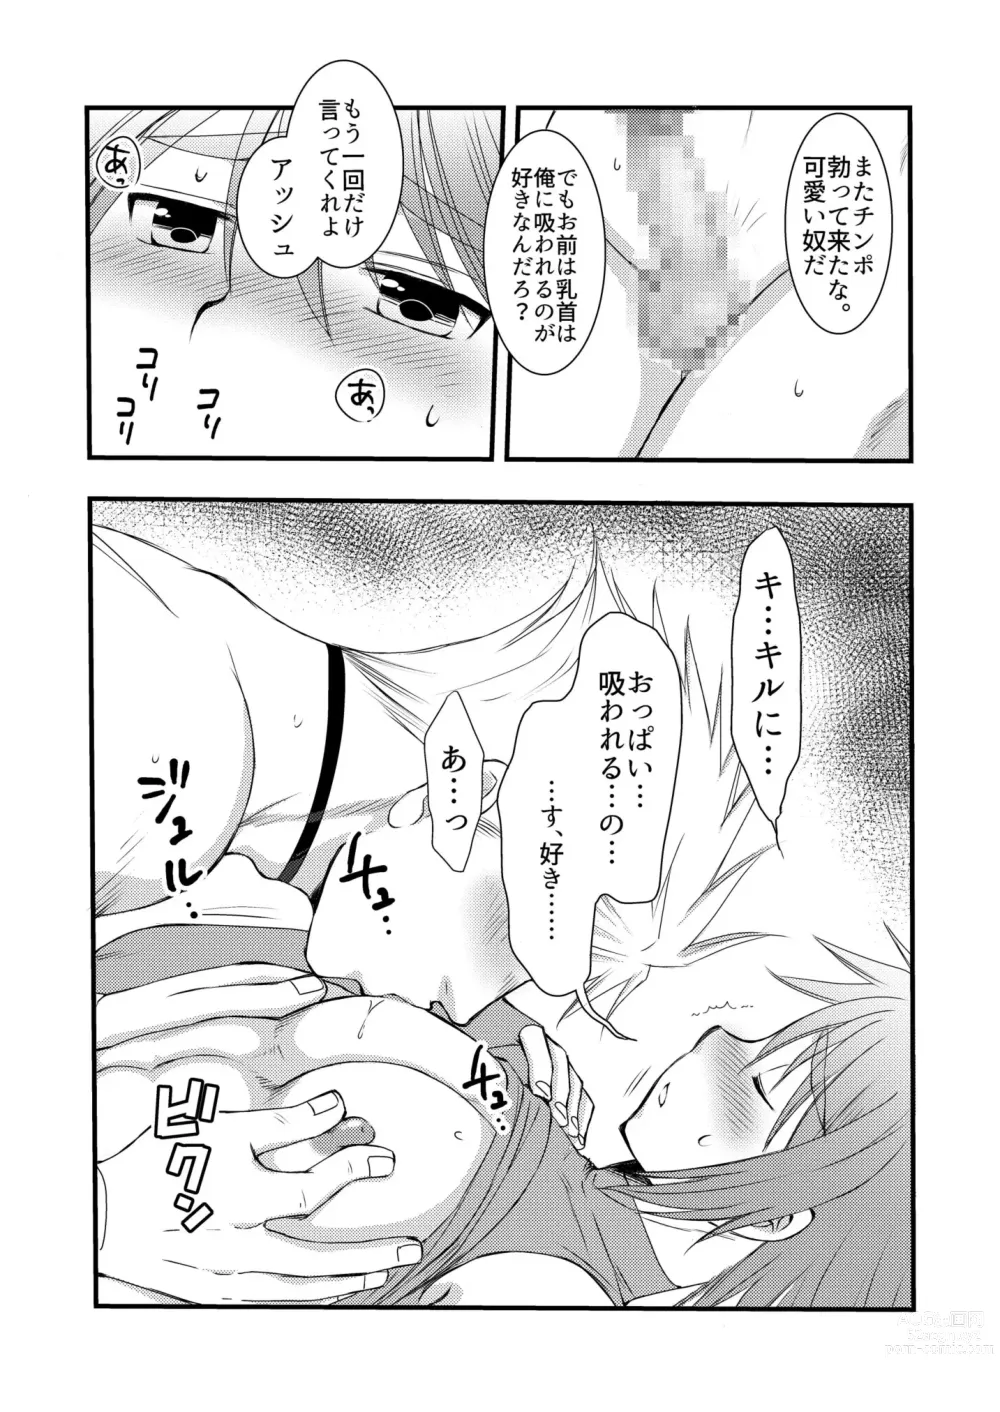 Page 37 of doujinshi Osukina Kare to Hajimete no Kinoko Kari